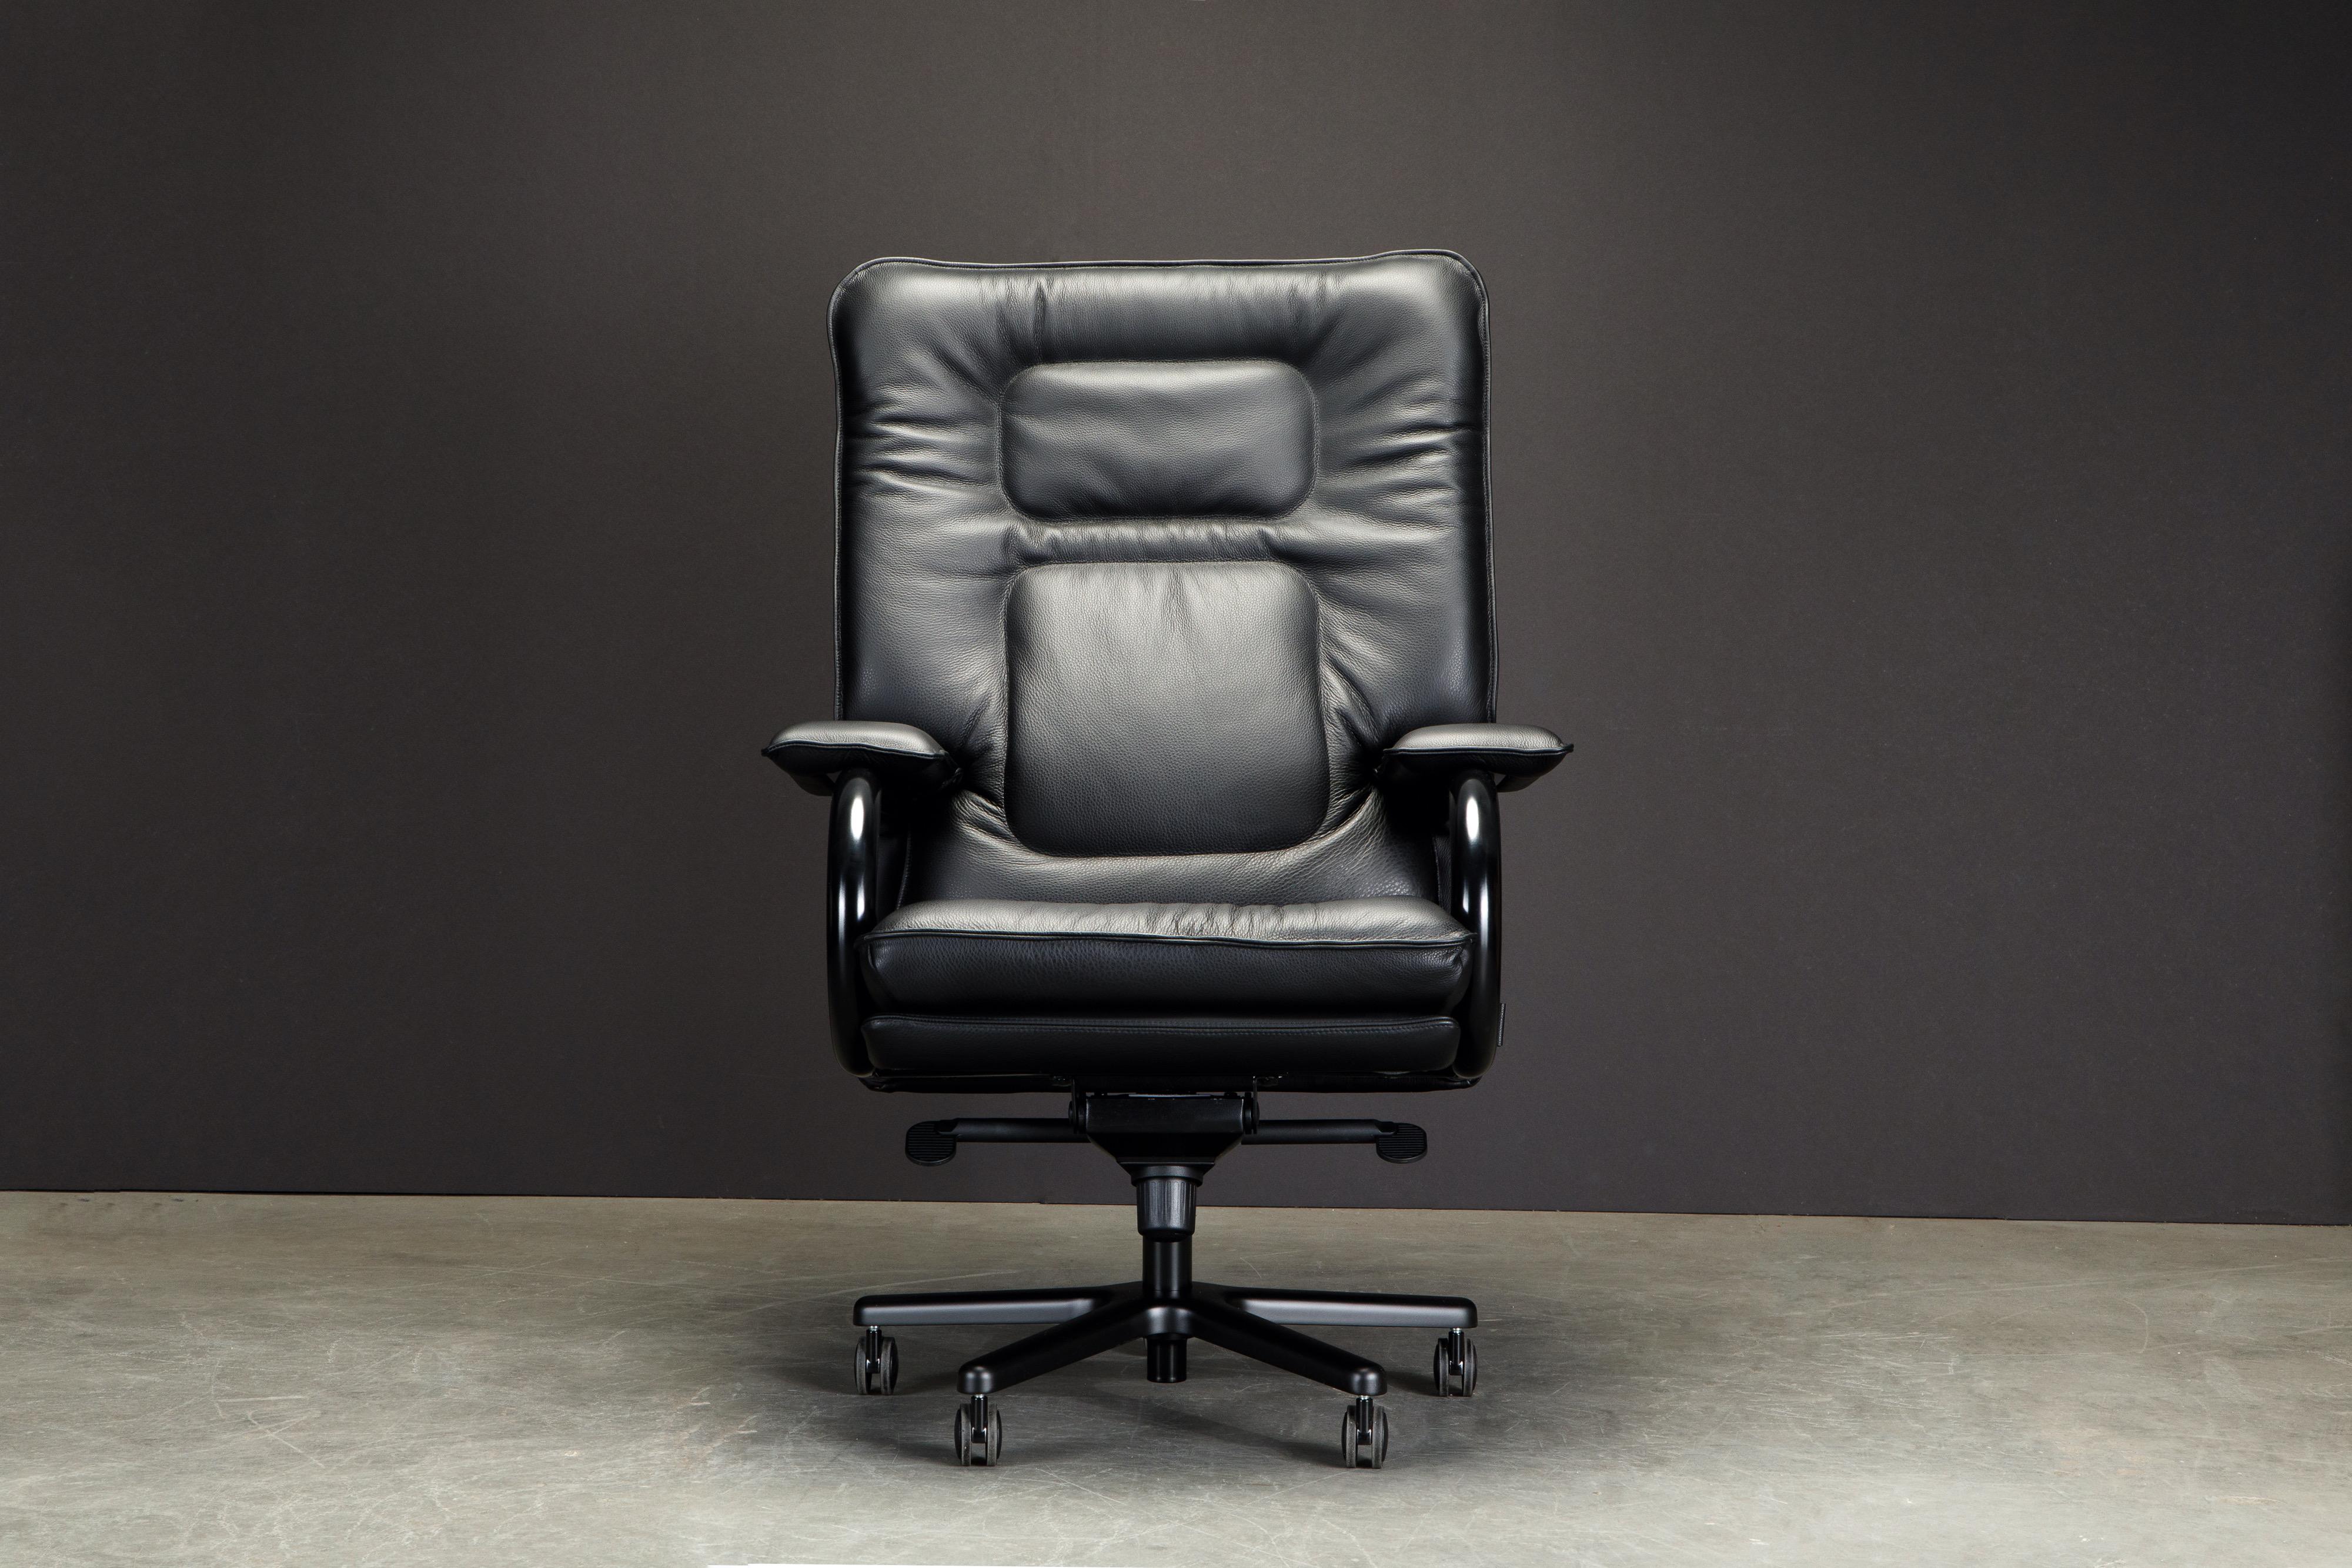 Cet incroyable fauteuil de direction s'appelle 'Big', il a été conçu par Guido Faleschini by i4 Mariani dans les années 1970. Cet exemple a été récemment produit dans un superbe cuir noir avec des accoudoirs et une base de couleur assortie. 

Un